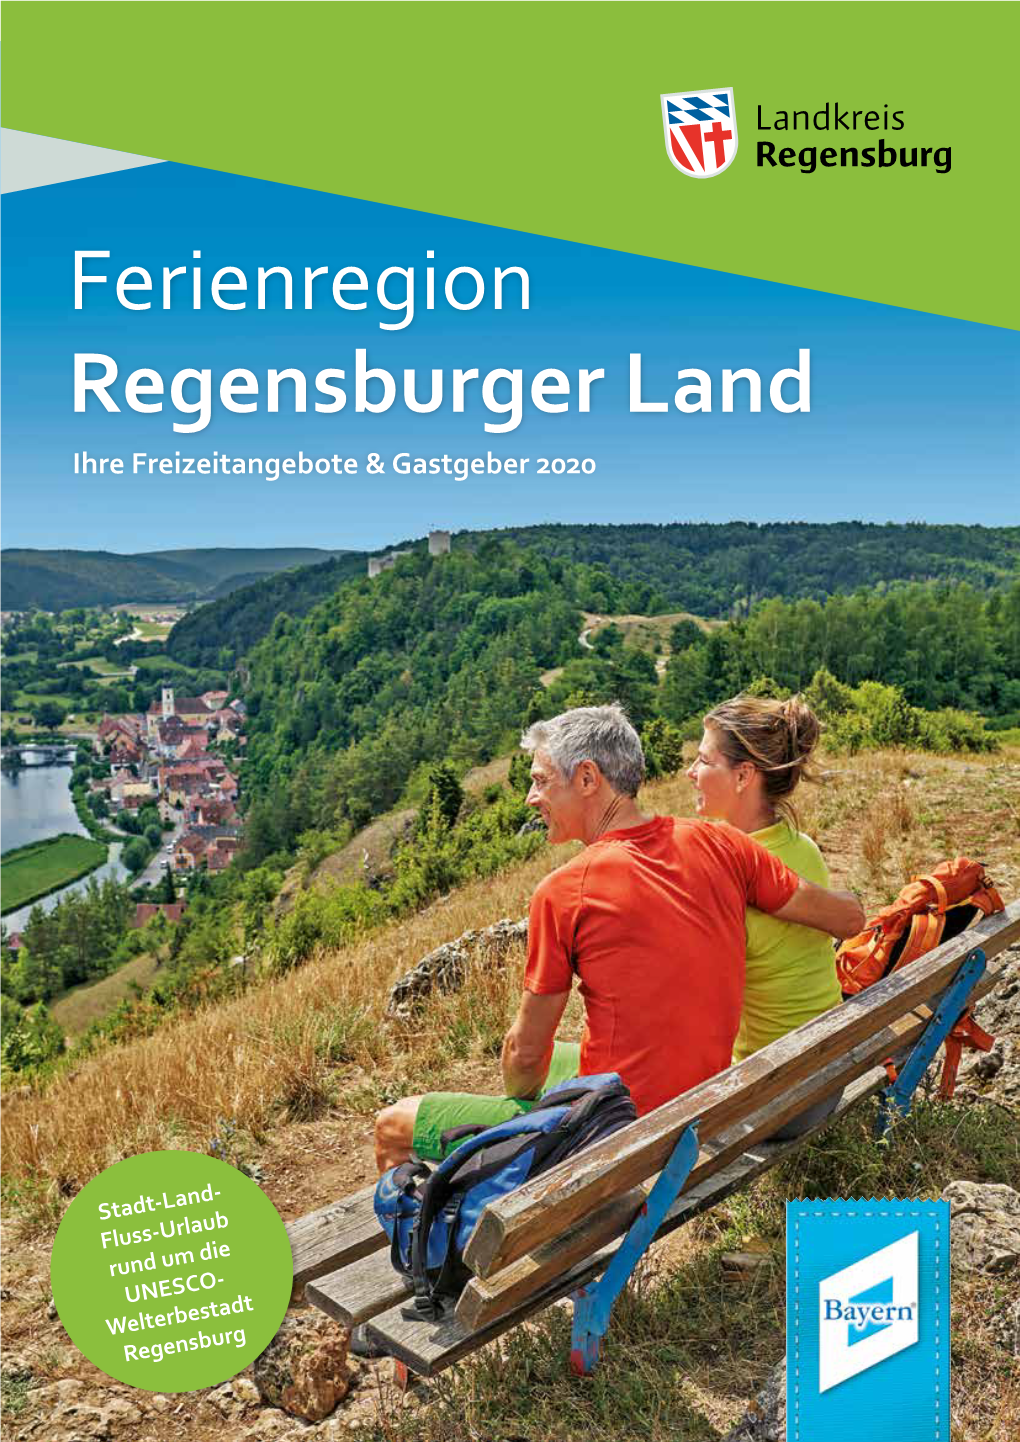 Ferienregion Regensburger Land Ihre Freizeitangebote & Gastgeber 2020